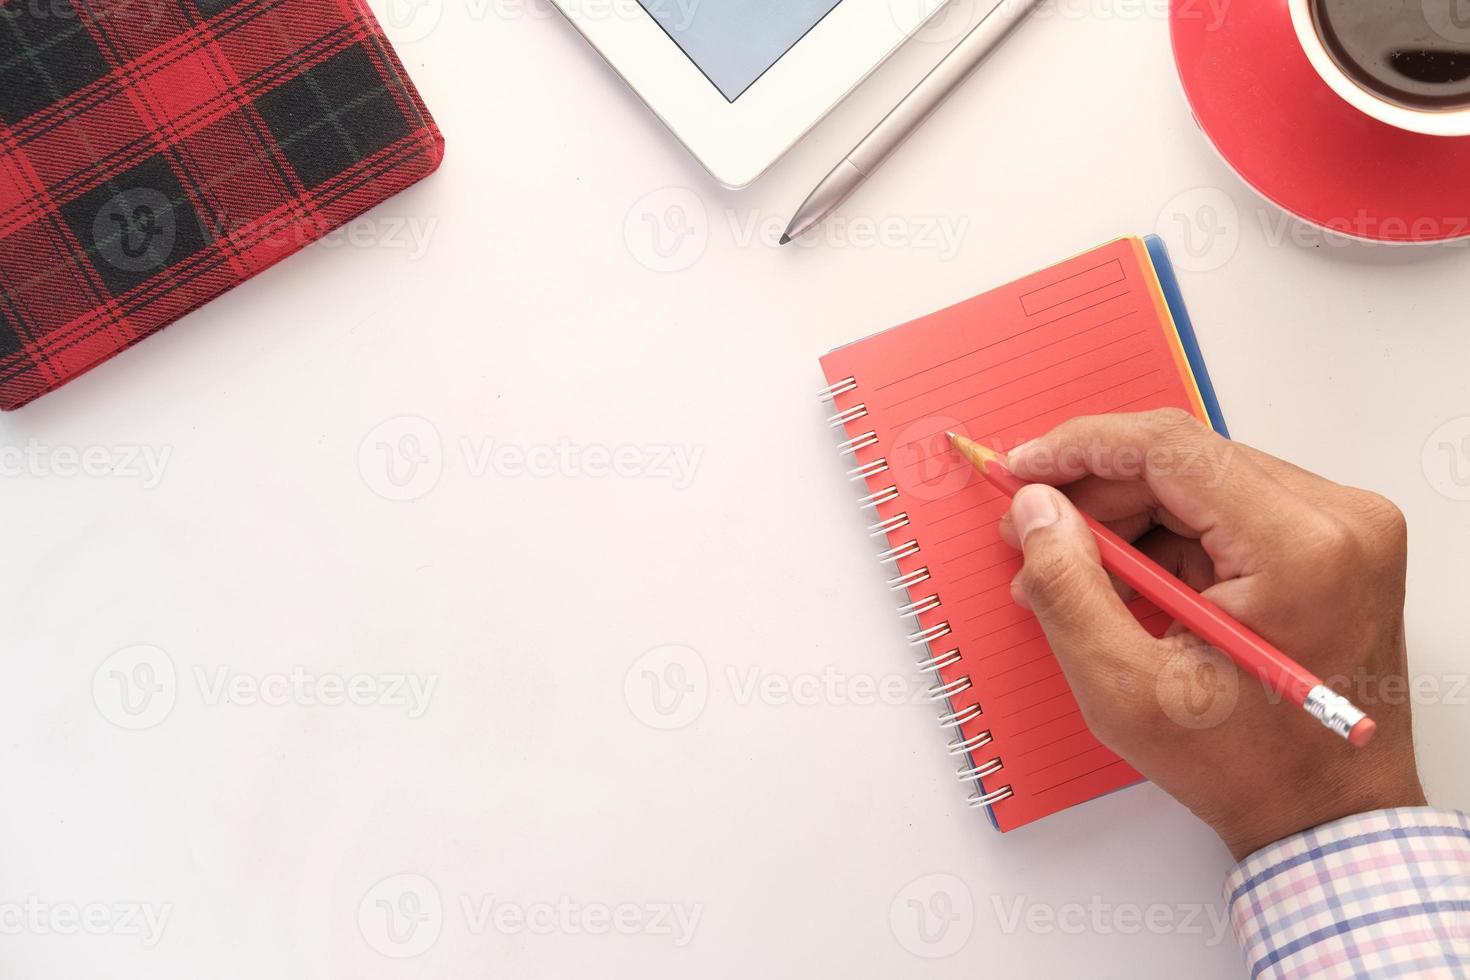 La main de l'homme écrit sur le bloc-notes rouge avec un crayon photo